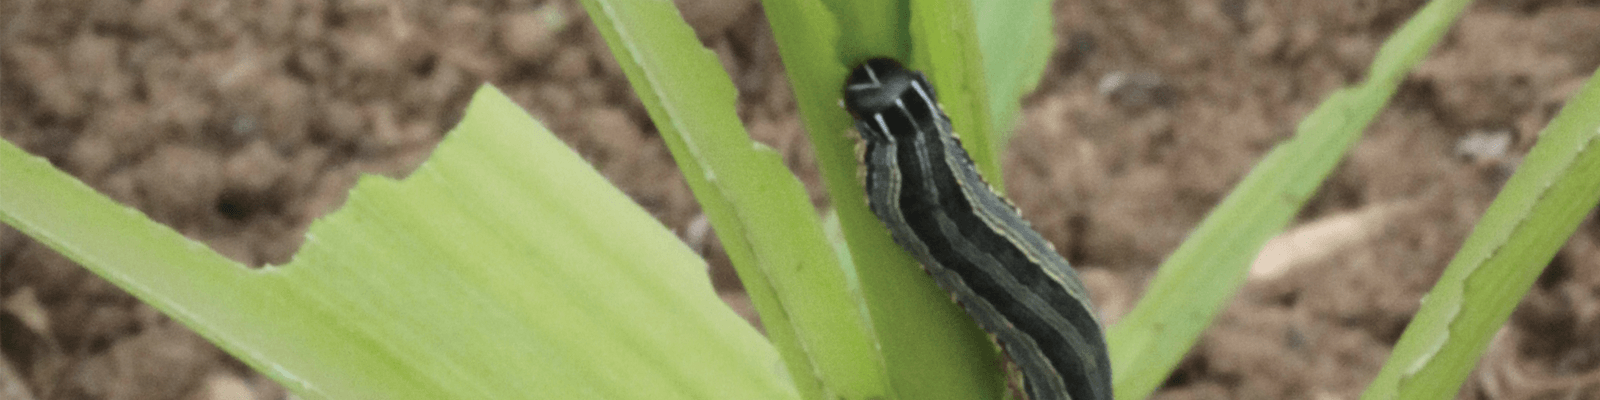 An armyworm on a leaf